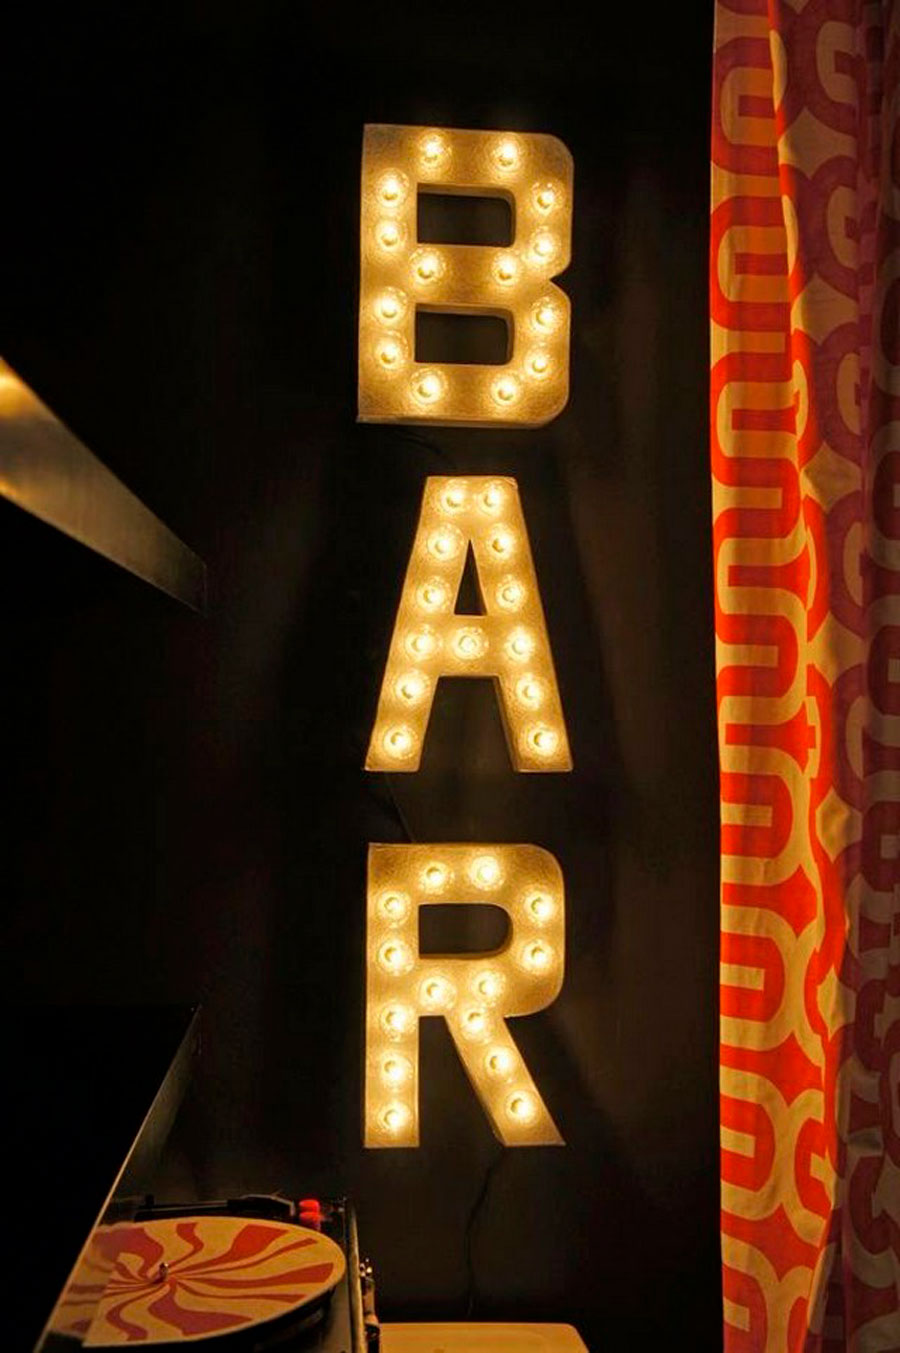 letras iluminadas que dicen bar